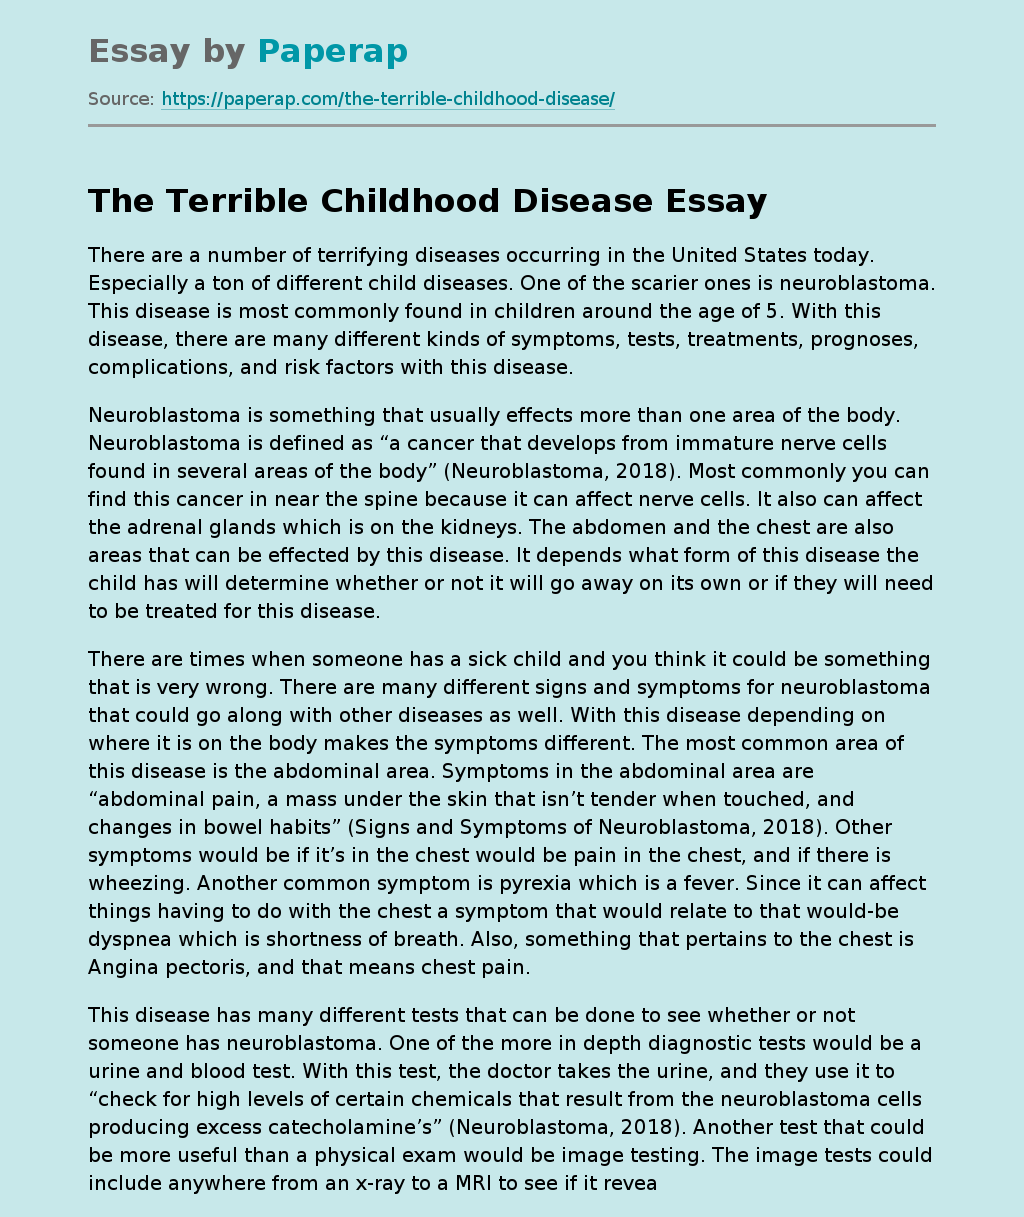 The Terrible Childhood Disease